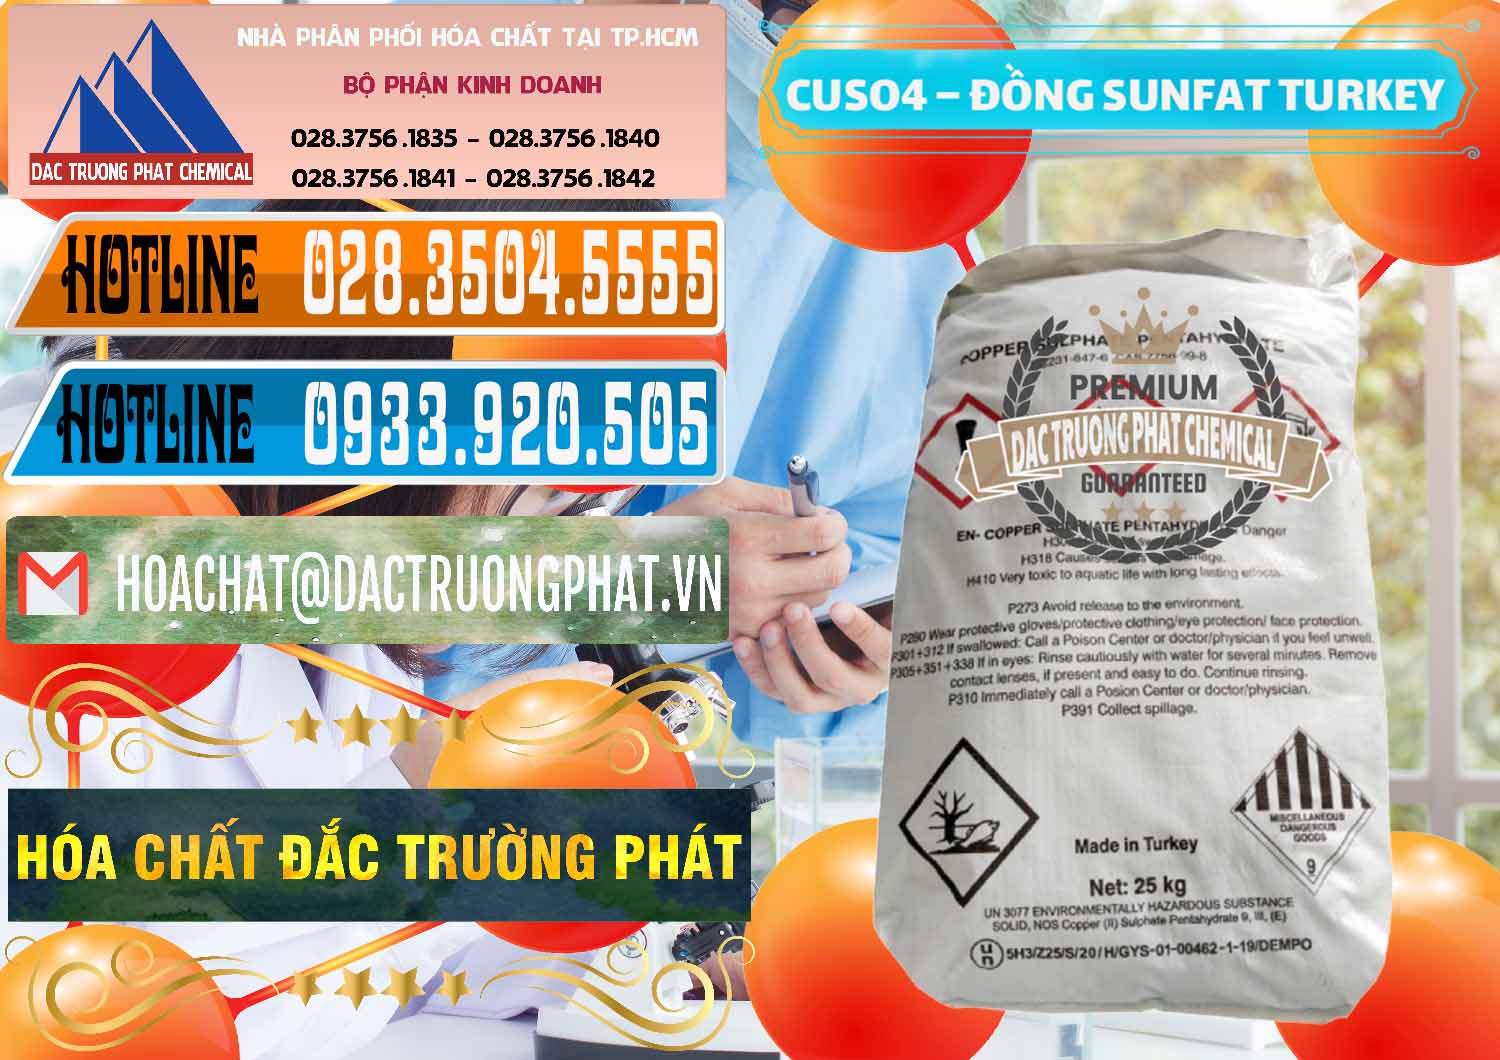 Nơi chuyên phân phối _ bán CuSO4 – Đồng Sunfat Thổ Nhĩ Kỳ Turkey - 0481 - Công ty chuyên kinh doanh _ cung cấp hóa chất tại TP.HCM - stmp.net